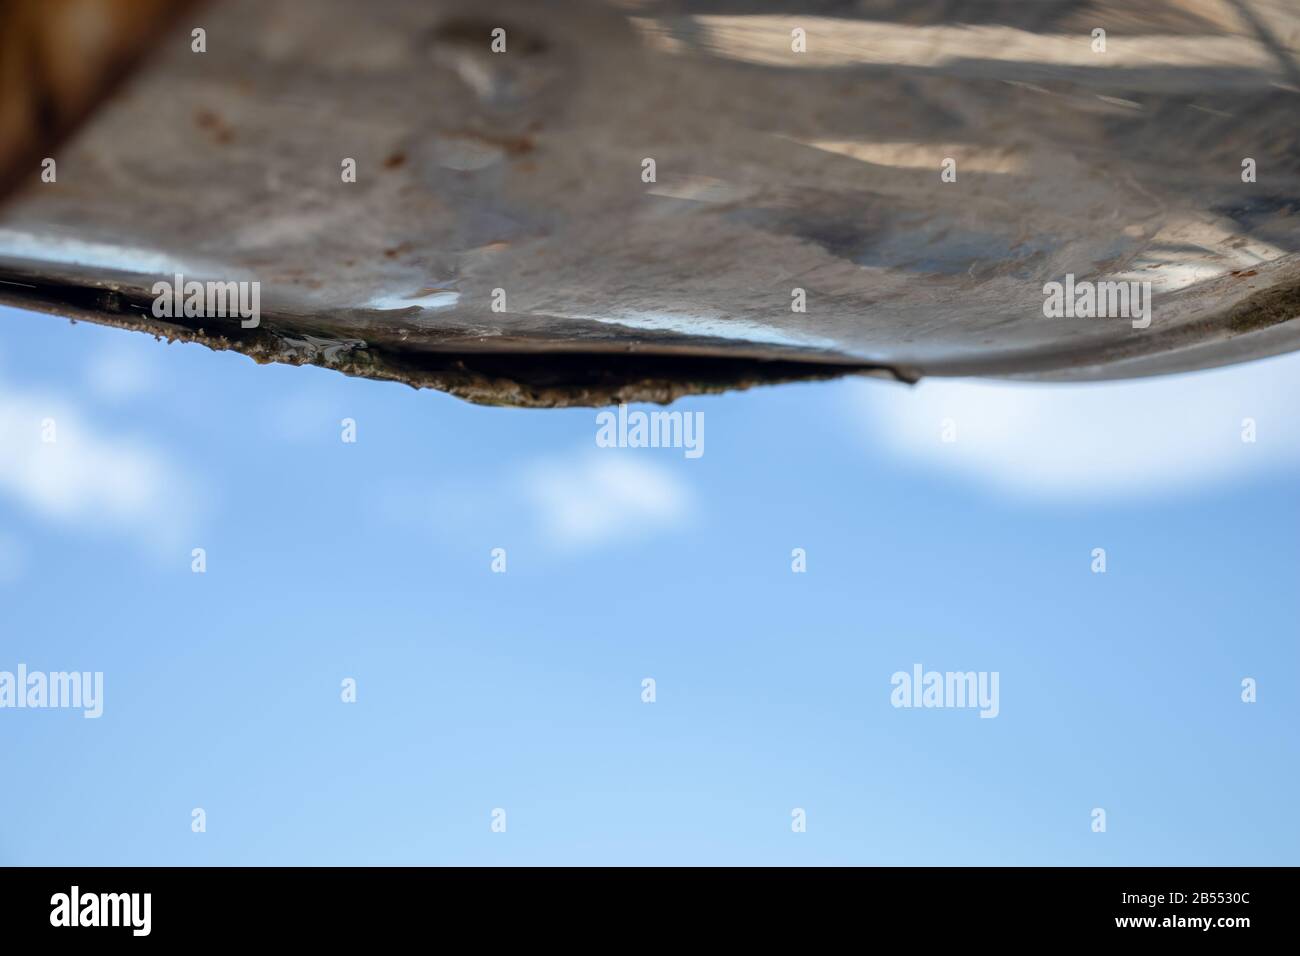 Metall rostig alt beschädigt und kaputter Wassertank eines Solarpanels Stockfoto